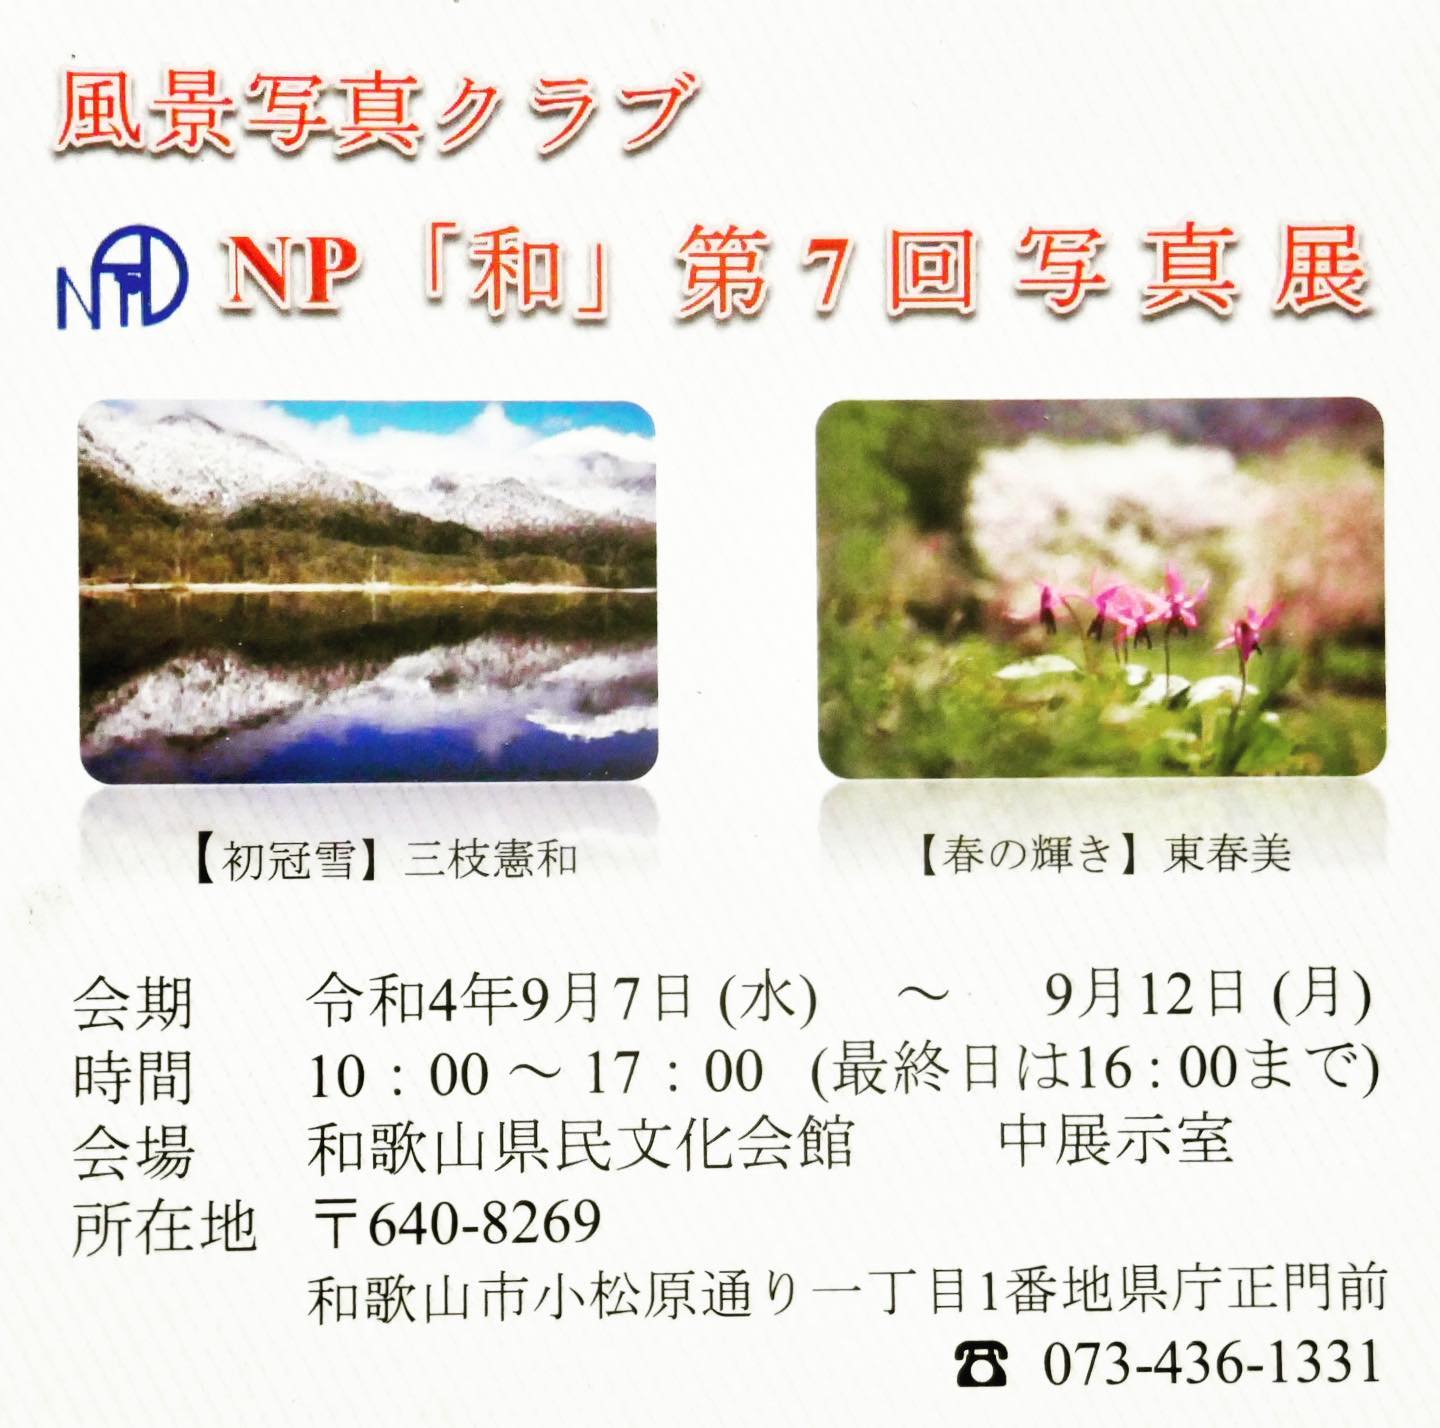 Instagram更新しました。 eg. 、NP「和」さん 写真展9月12日(月)まで、和歌山県民文化会館・展示室にて。知り合いが居るので見に行ってきました。最近は風景写真と言えば凄い風景を凄く見えるように撮って凄いレタッチをして…。と、凄い事ずくめで「どうだ！参ったか！」と言わんばかりの写真が多いけど、こういう個性的な撮りたいように撮った写真を見ると何故だかホッとする。僕はちょっと捻くれているのか？昨今のスゴイ！キレイ！だけの写真は飽きてくるのです。マッチョで完璧な肉体美のボティービルダーもマニアでない限り5人も見れば飽きてくる。そういう時にお腹がポコッと出たお笑い芸人的なポッチャリさんが居たりするとちょっとホッとする。ヒョロヒョロで「良く生きてるなぁー」と思うような人や牛乳瓶メガネで愛おしい笑顔の人など、いろんなタイプの人を見たいのである。写真も何て事ない気が落ち着く写真や「よく気づいなぁー」って思う写真、思わずニヤリとしてしまう写真など、色んな感情の変化があって楽しくて愛おしいのだ。そんな凄いだけじゃない、ホッと出来るようなおじいちゃんおばあちゃんの写真展。ちょーっと覗いて見てごらん♪ちょーっと覗いて見てこらん♪「なーんや好き勝手生きても大丈夫やん！」ってちょっとホッとできるから。 – from Instagram